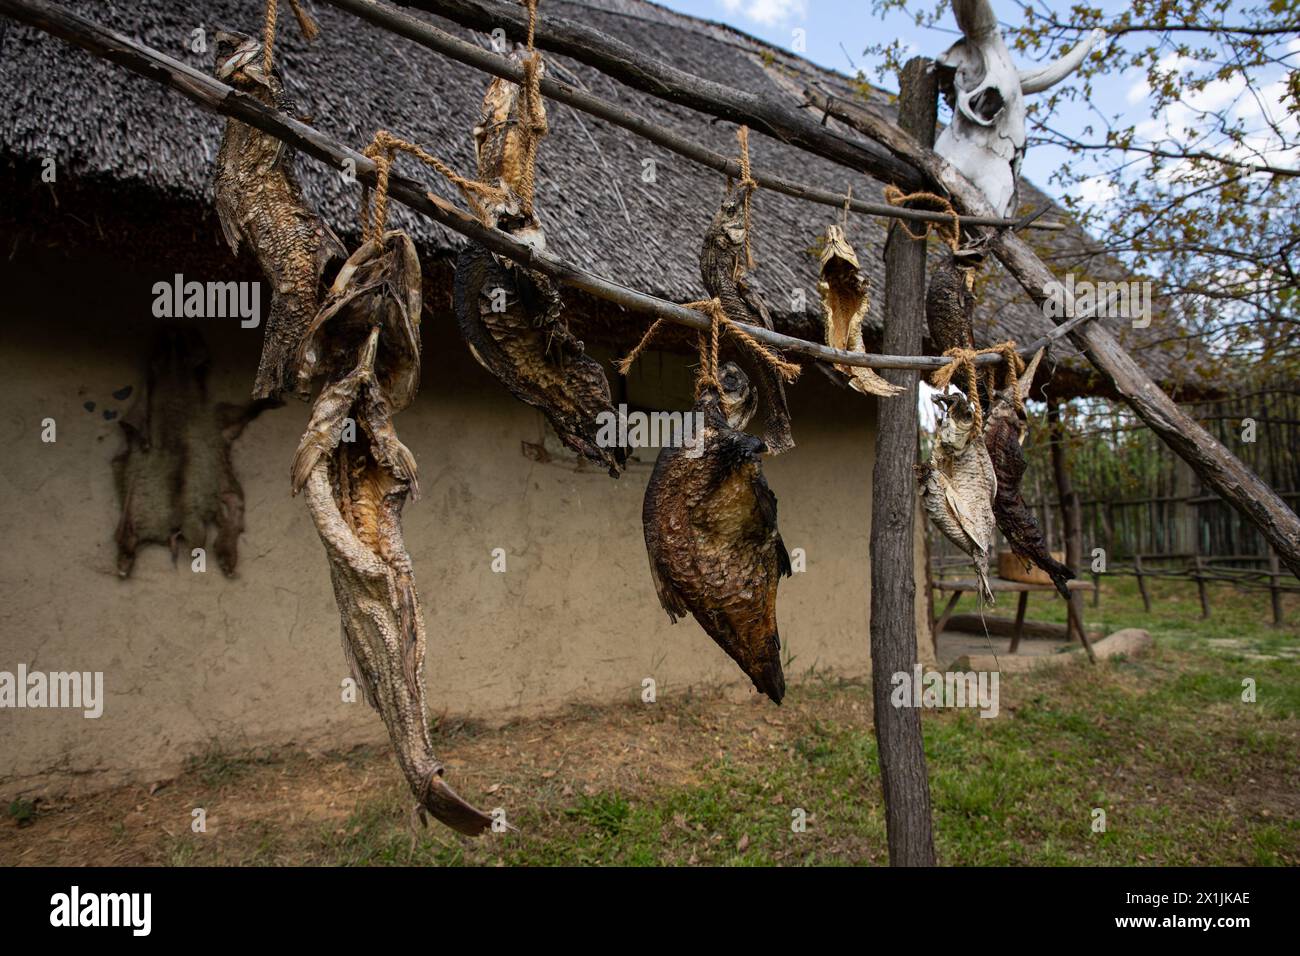 Poisson séché à l'air dans l'ancien village de pêcheurs sur les rives du Danube en Serbie Banque D'Images